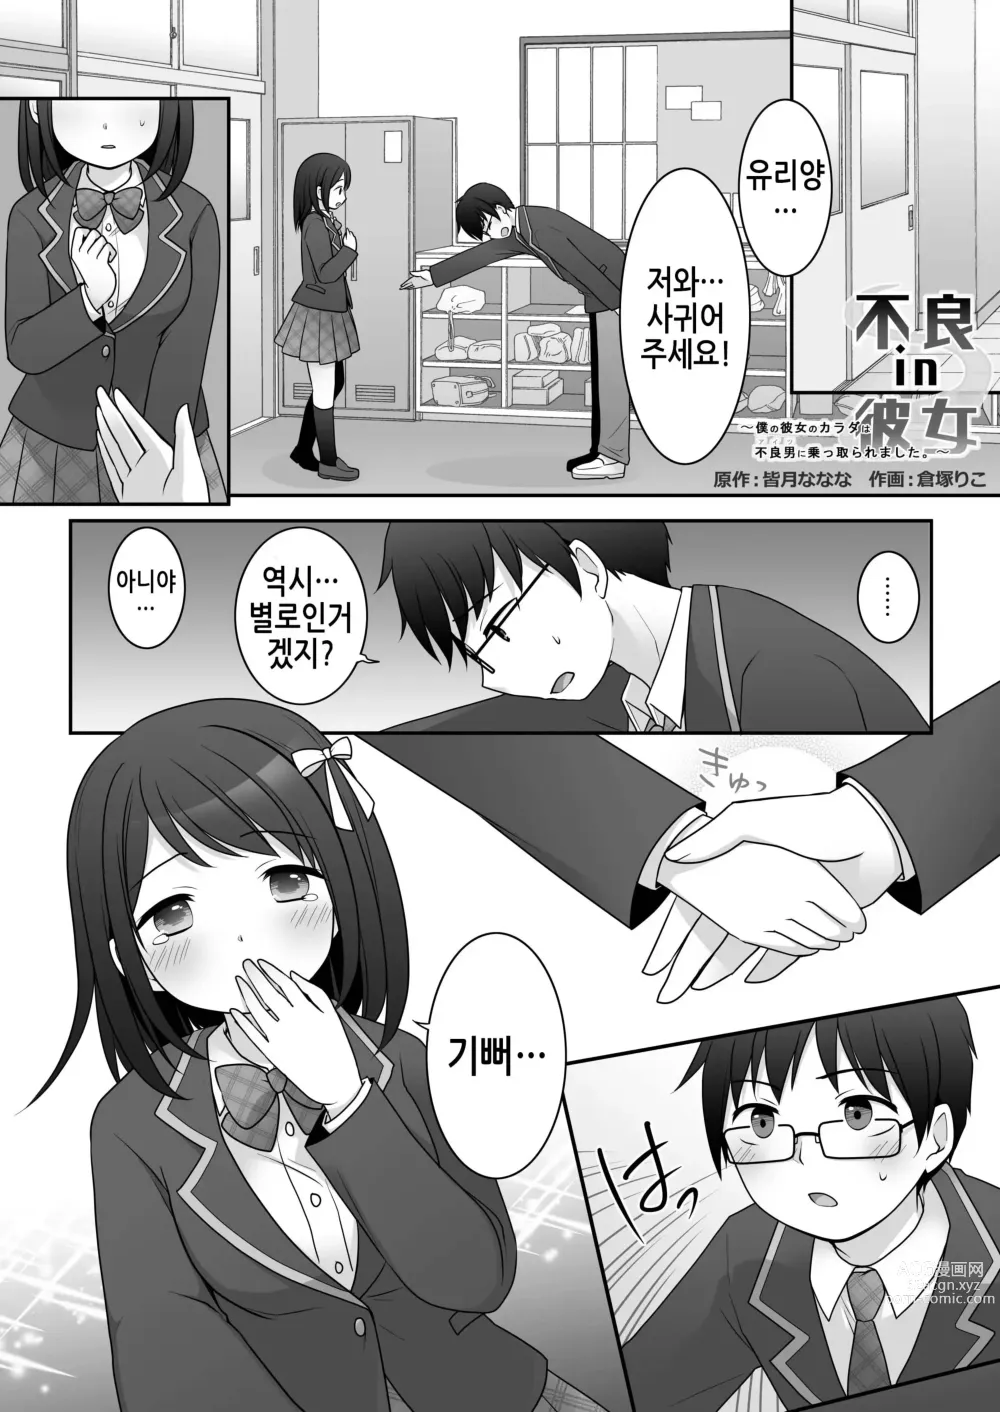 Page 2 of doujinshi 불량 in 그녀 내 여자친구의 몸뚱이는 불량남에게 납치되었다.